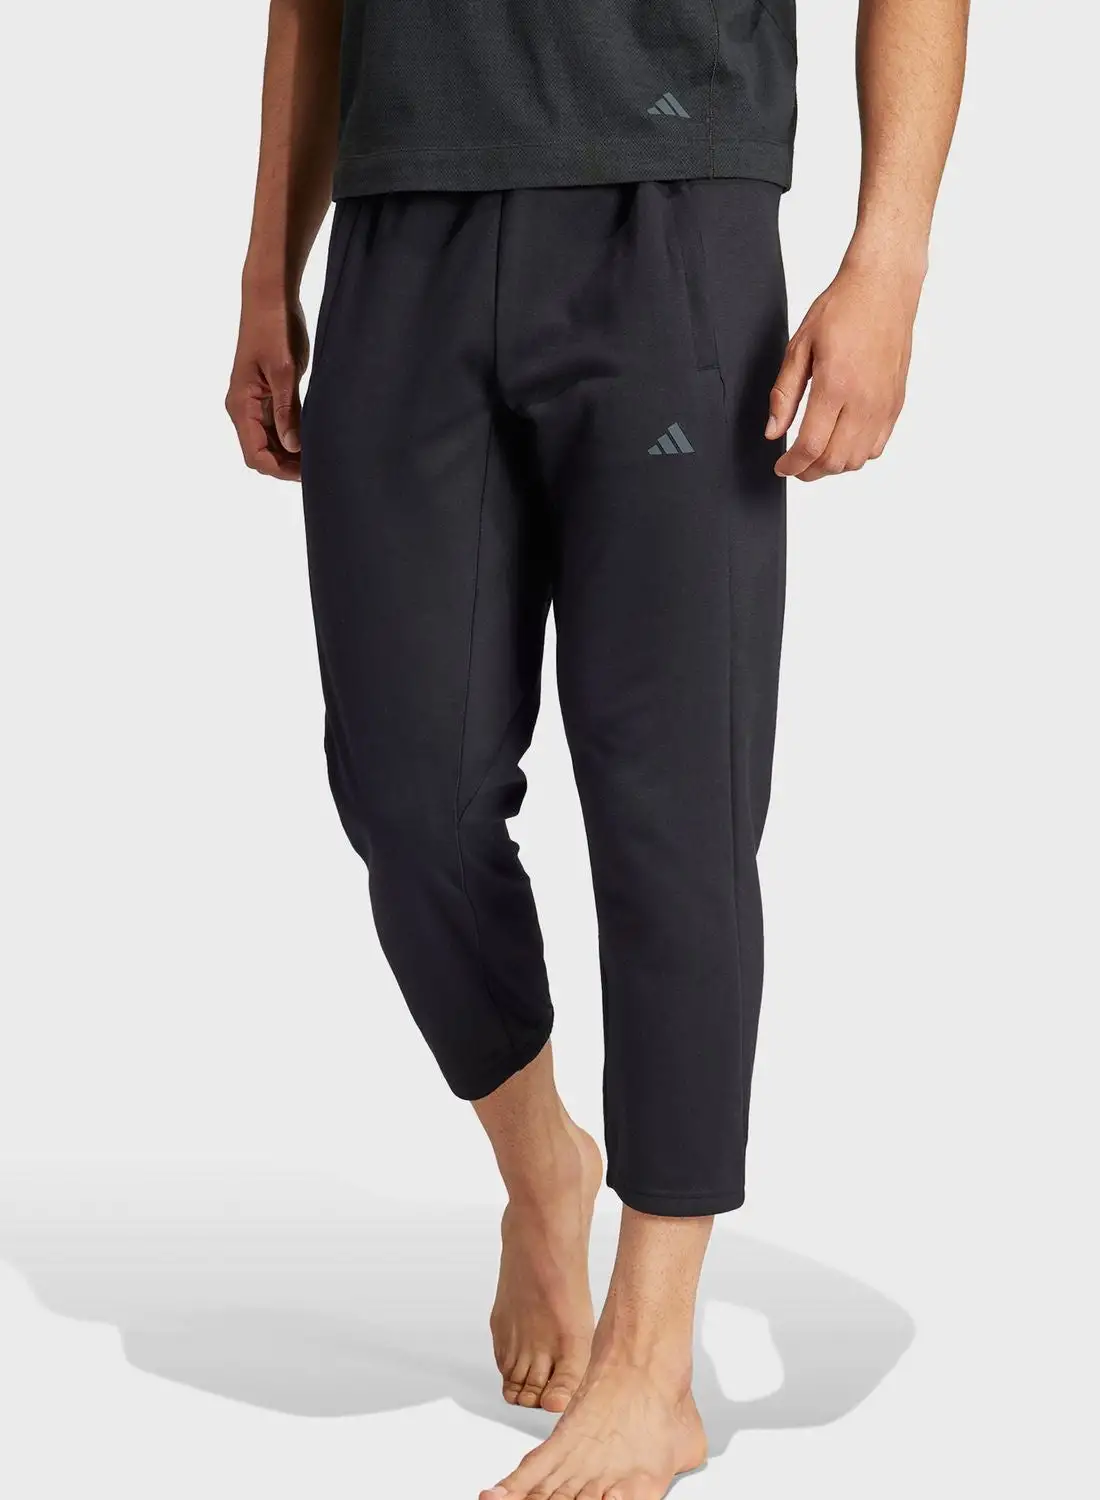 Adidas Yoga Base 78 Pants